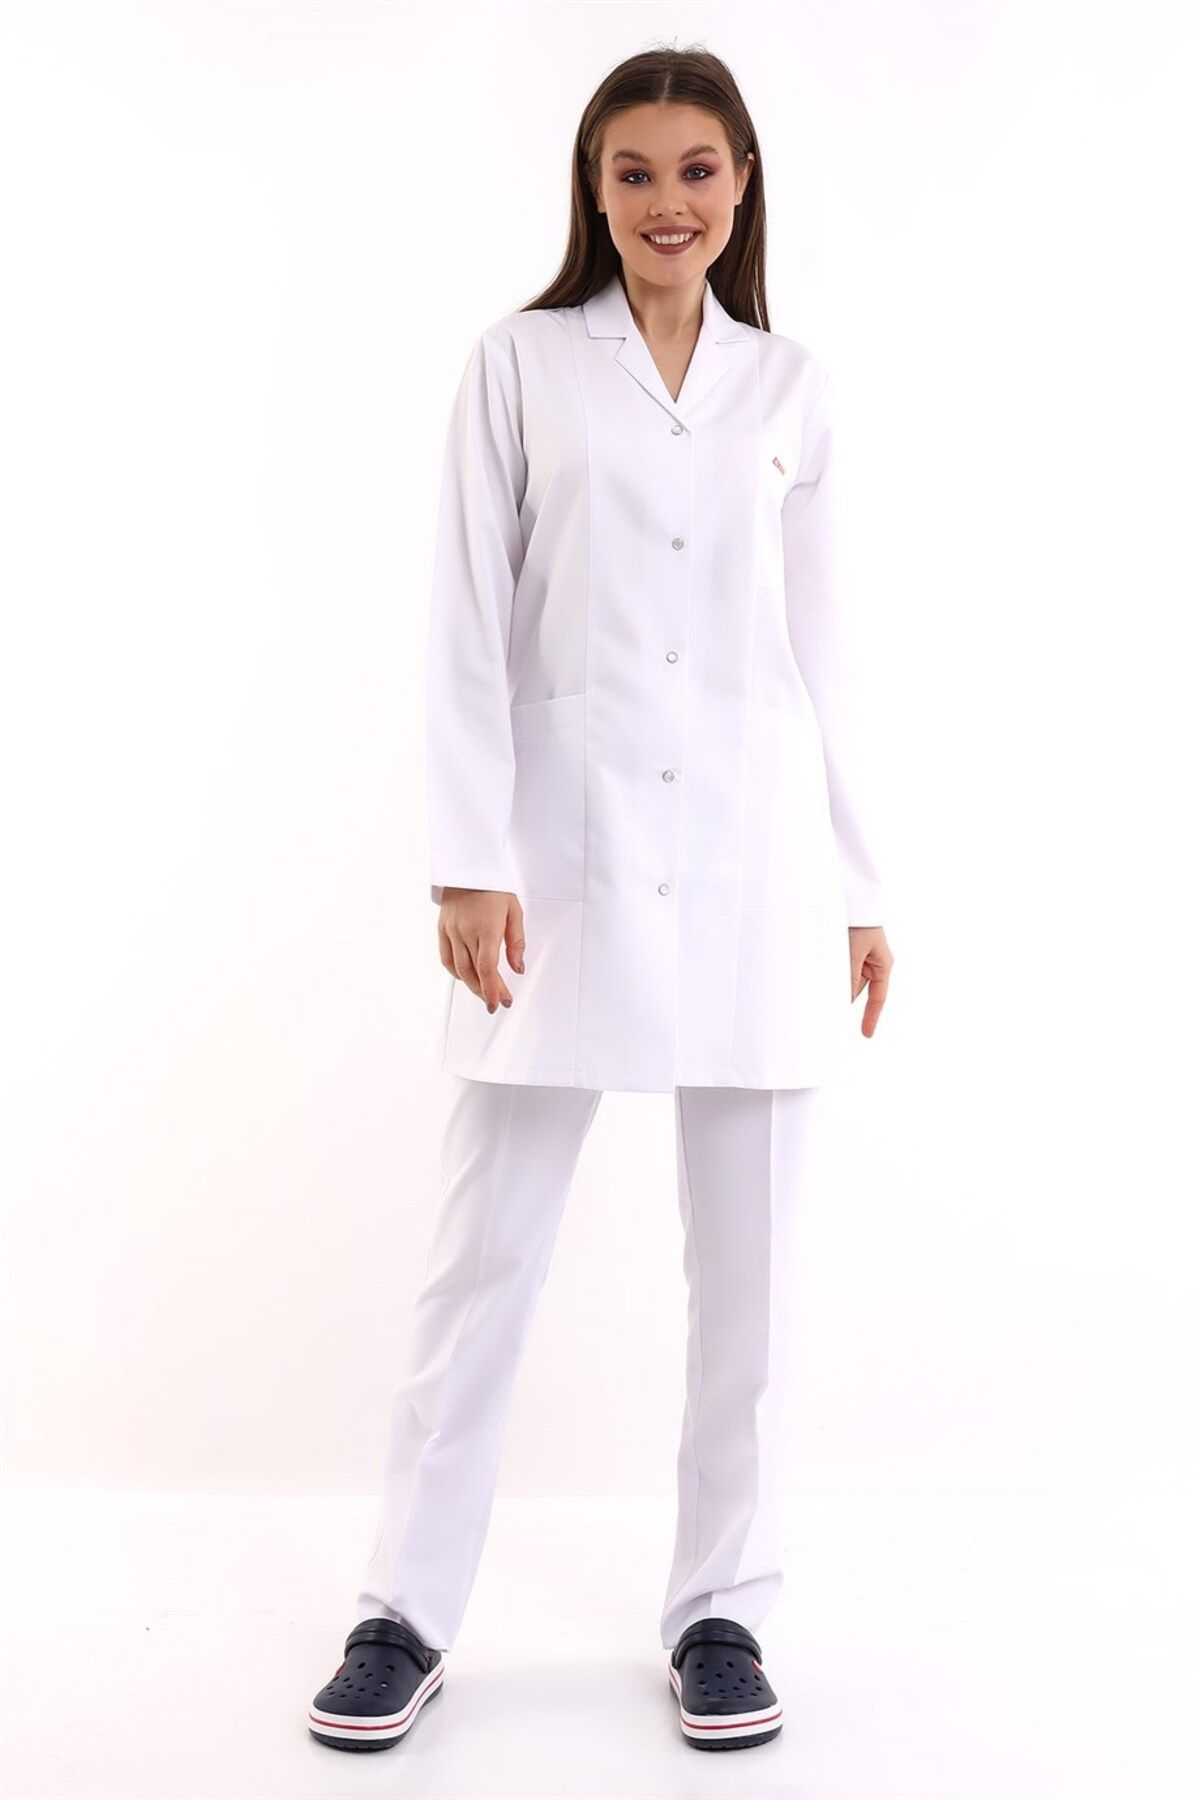 Bilenn Tekstil Doktor Öğretmen Kadın Önlük Ara Boy Ceket Yaka - 171 Beyaz